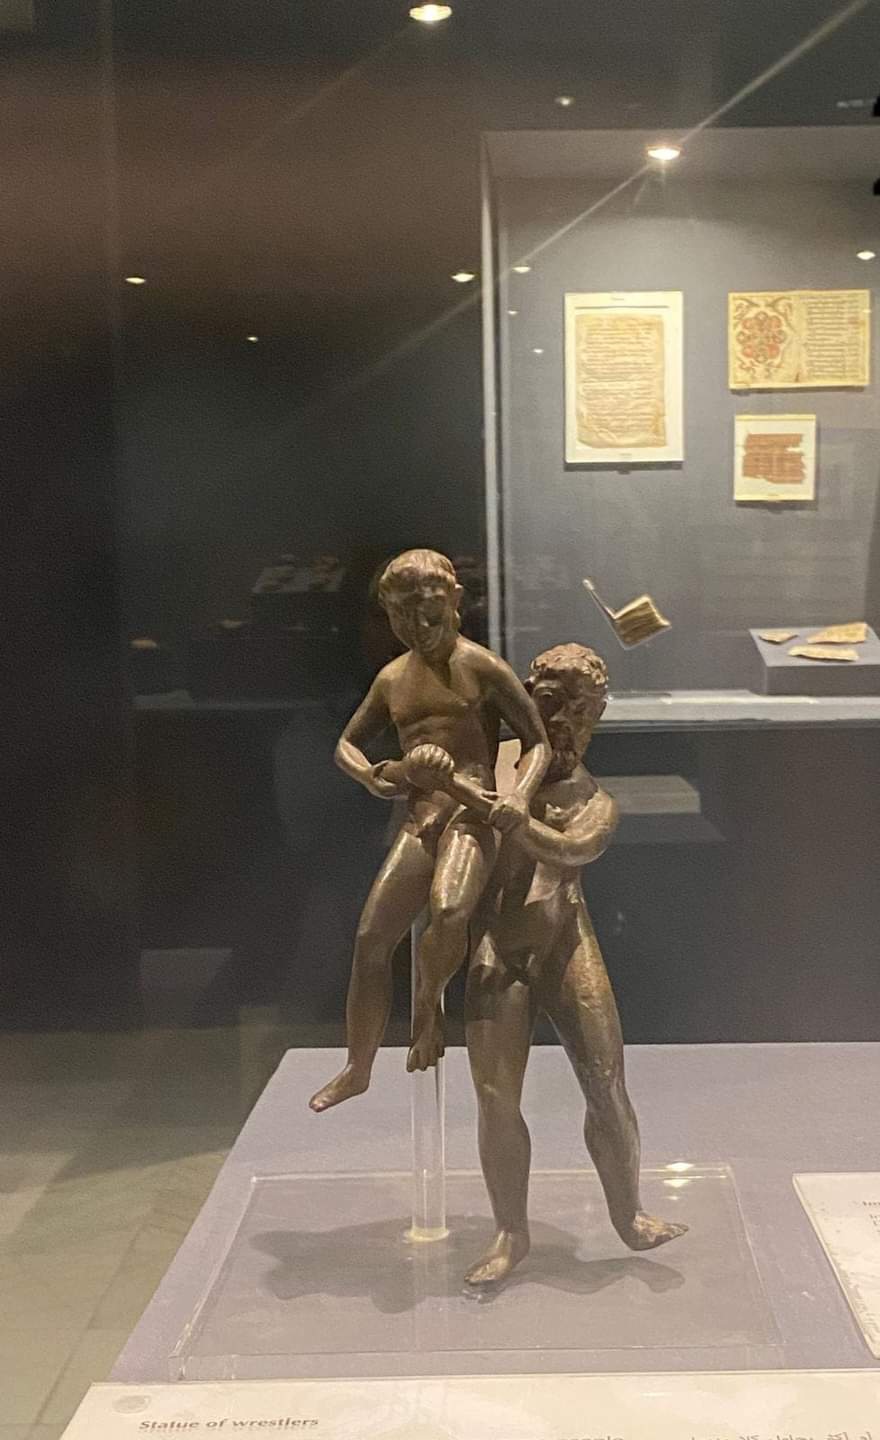 متحف آثار طنطا قبلة الزوار للتمتع بالتاريخ القديم (4)